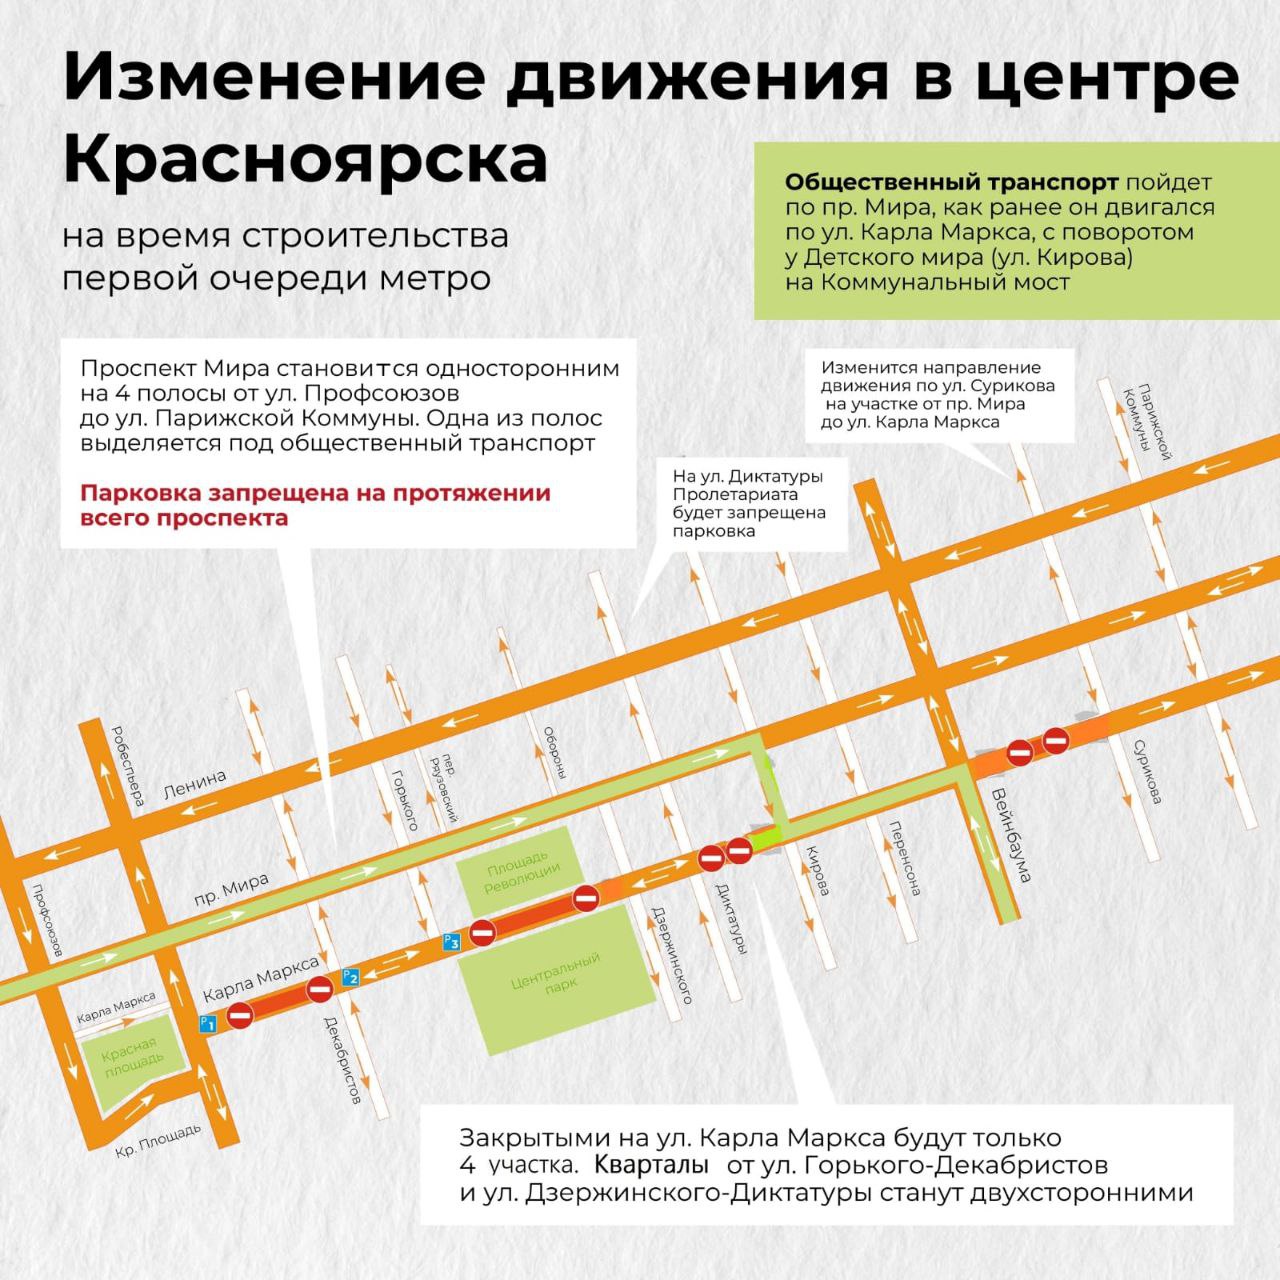 В центре Красноярска в ночь на 10 августа изменится схема движения